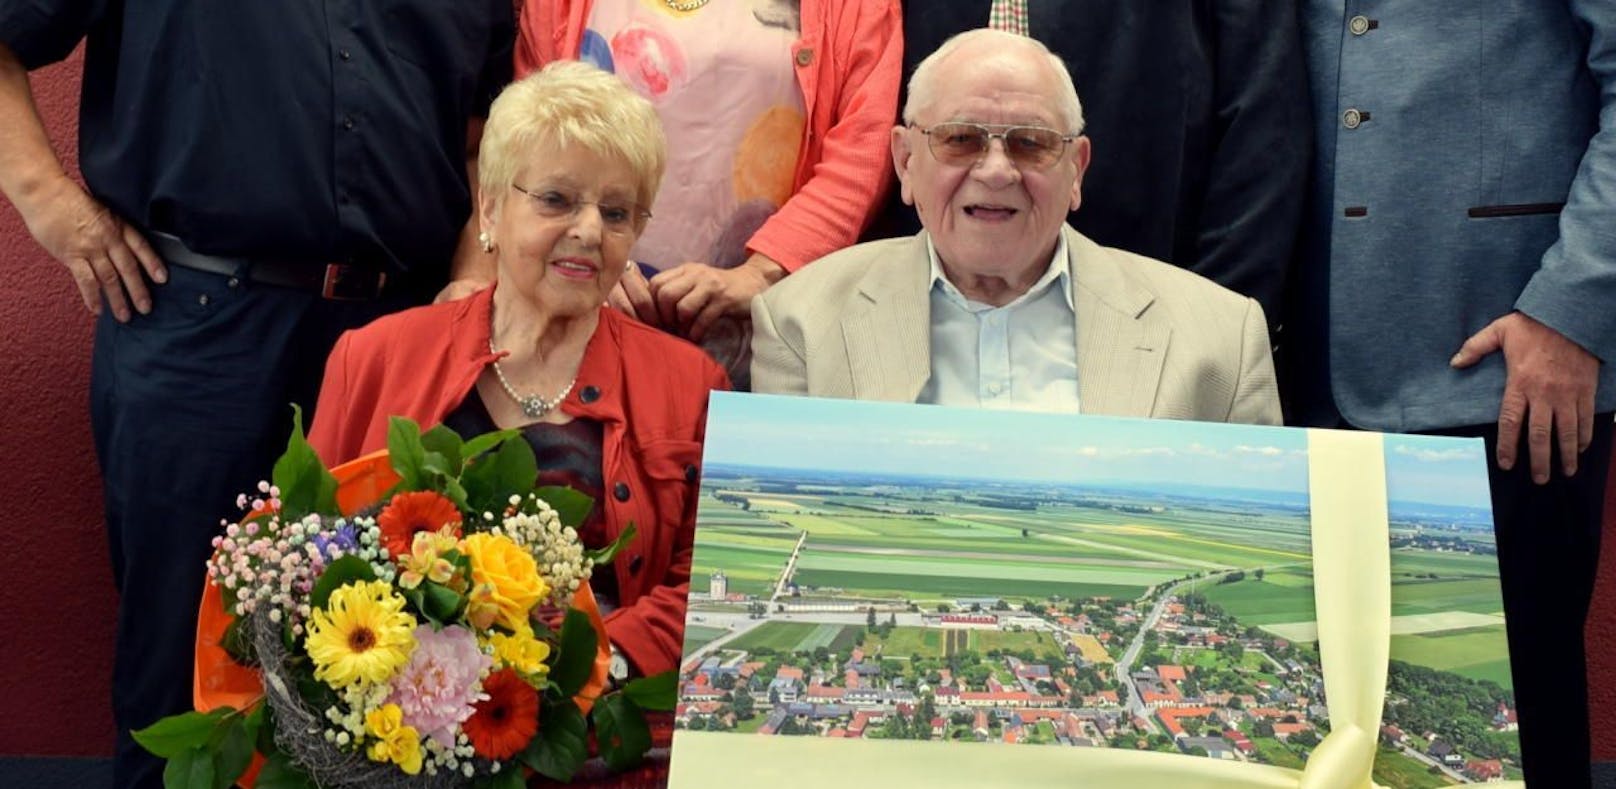 Antoniette und Günter  seit 60 Jahren verheiratet